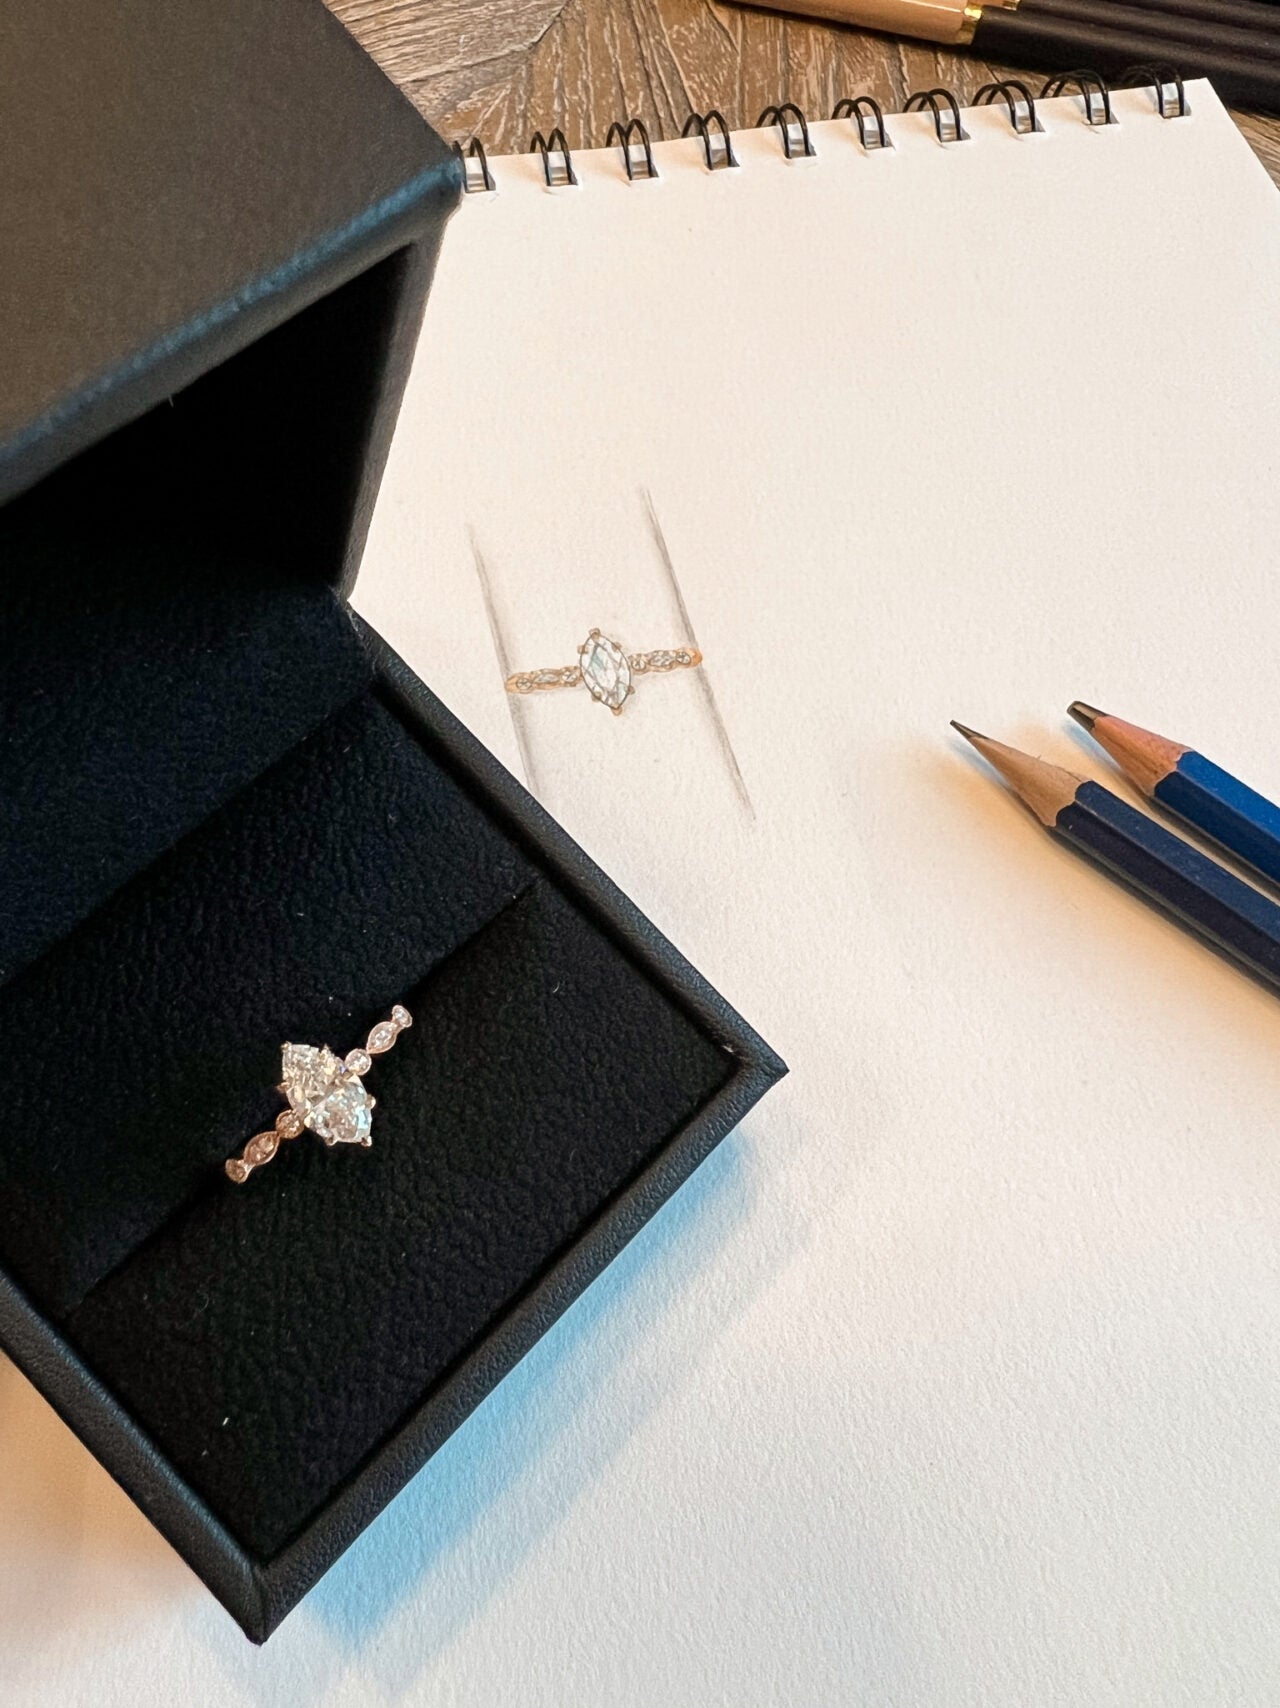 Bei Designer Diamonds kannst du dir dein Wunschschmuckstück designen lassen. Egal ob Verlobungsring, Eheringe, Halsketten, Ohrringe, Ringe oder Armbänder. Auf dem Bild ist ein goldener Diamantverlobungsring zu sehen.